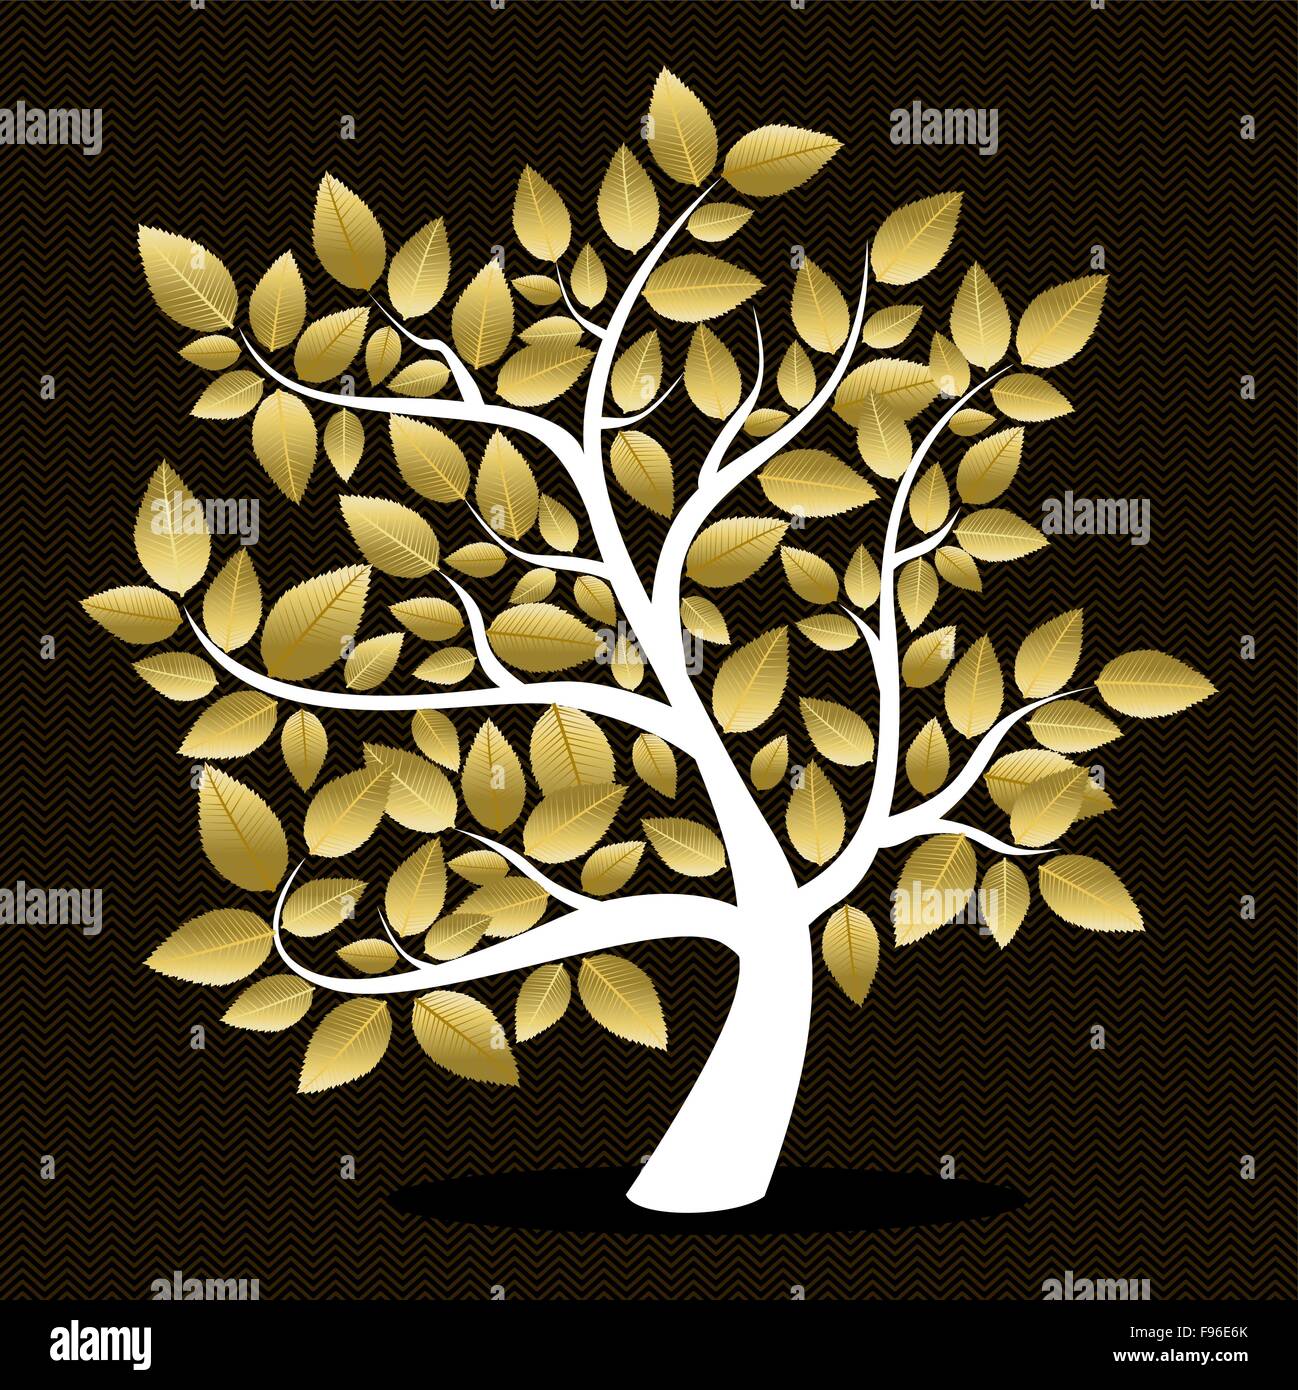 Herbst Baum mit Blattgold Silhouette Konzept Retro-Design. EPS10 Vektor. Stock Vektor